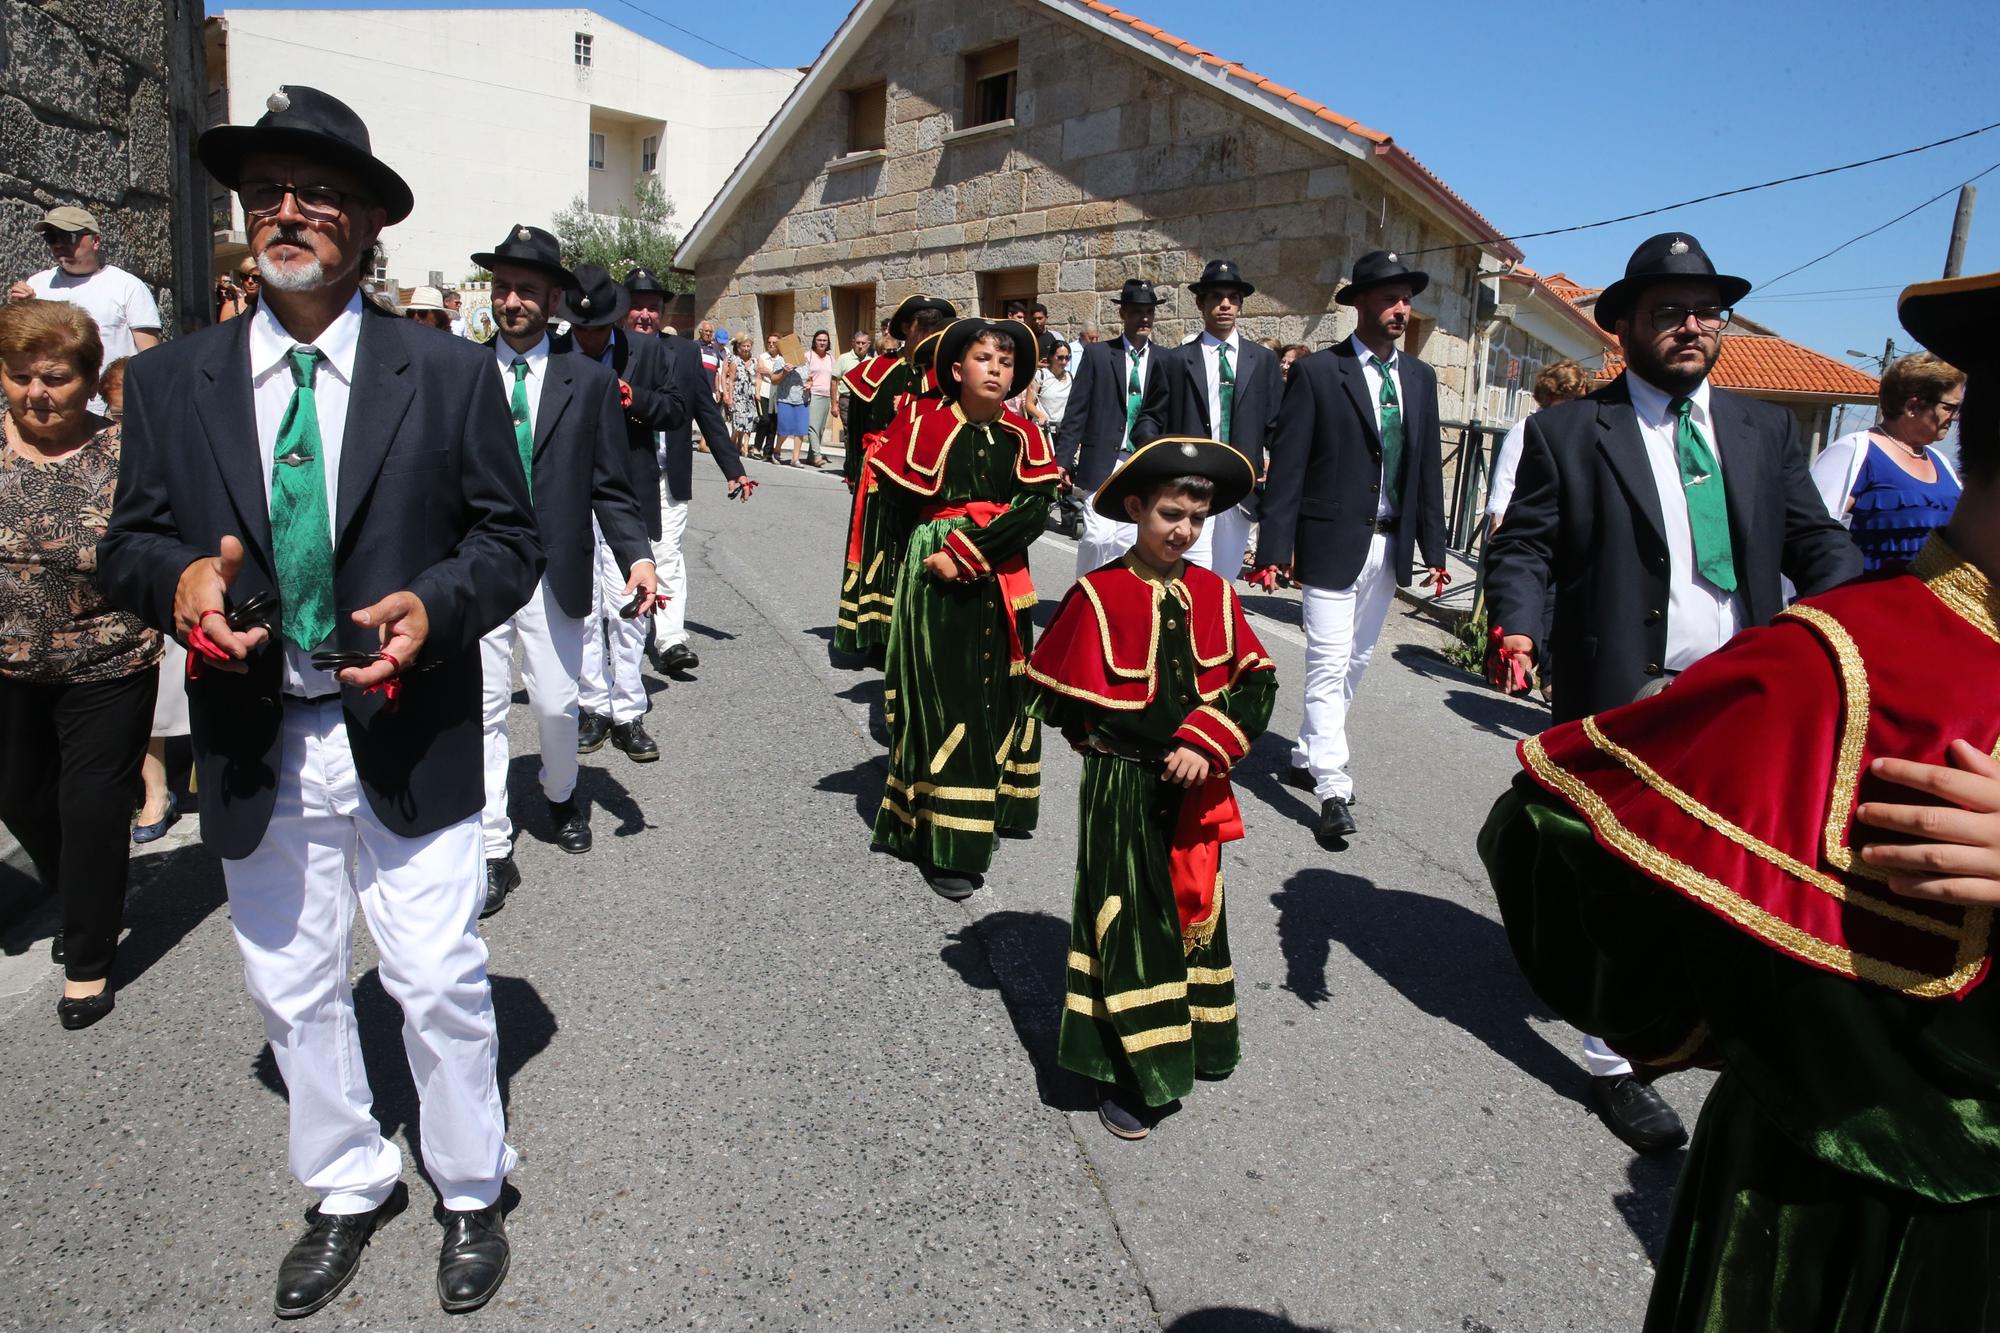 La procesión y la danza de San Roque de O Hío en imágenes (I)